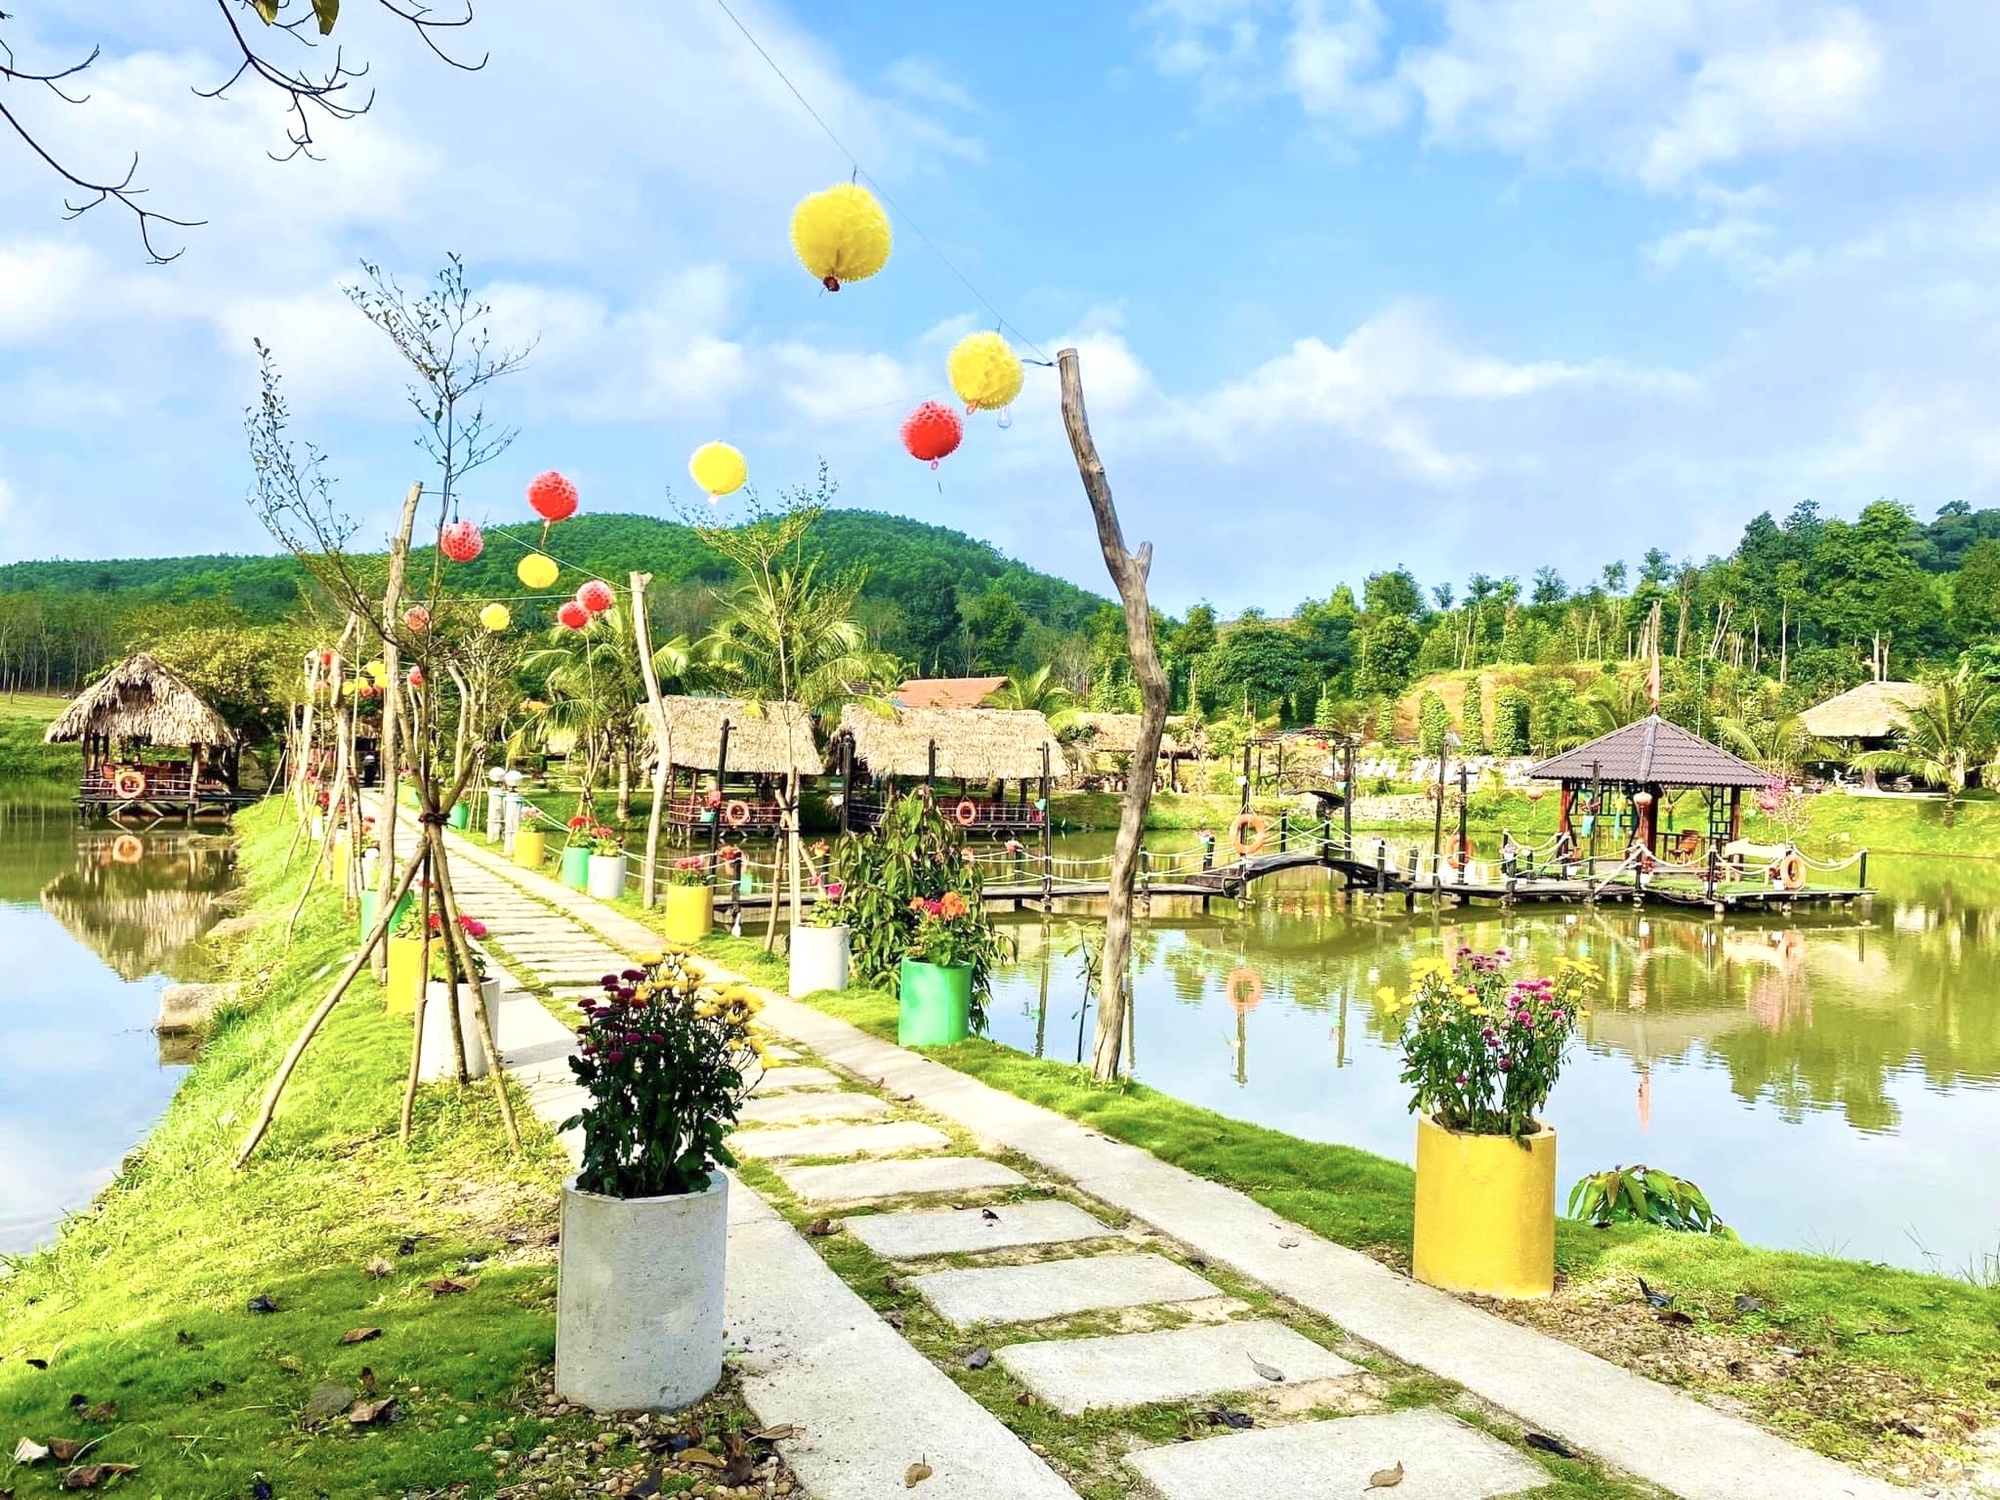 Nông thôn mới Quảng Bình, người dân biến đồi hoang thành khu du lịch sinh thái, hút khách đến check-in - Ảnh 1.